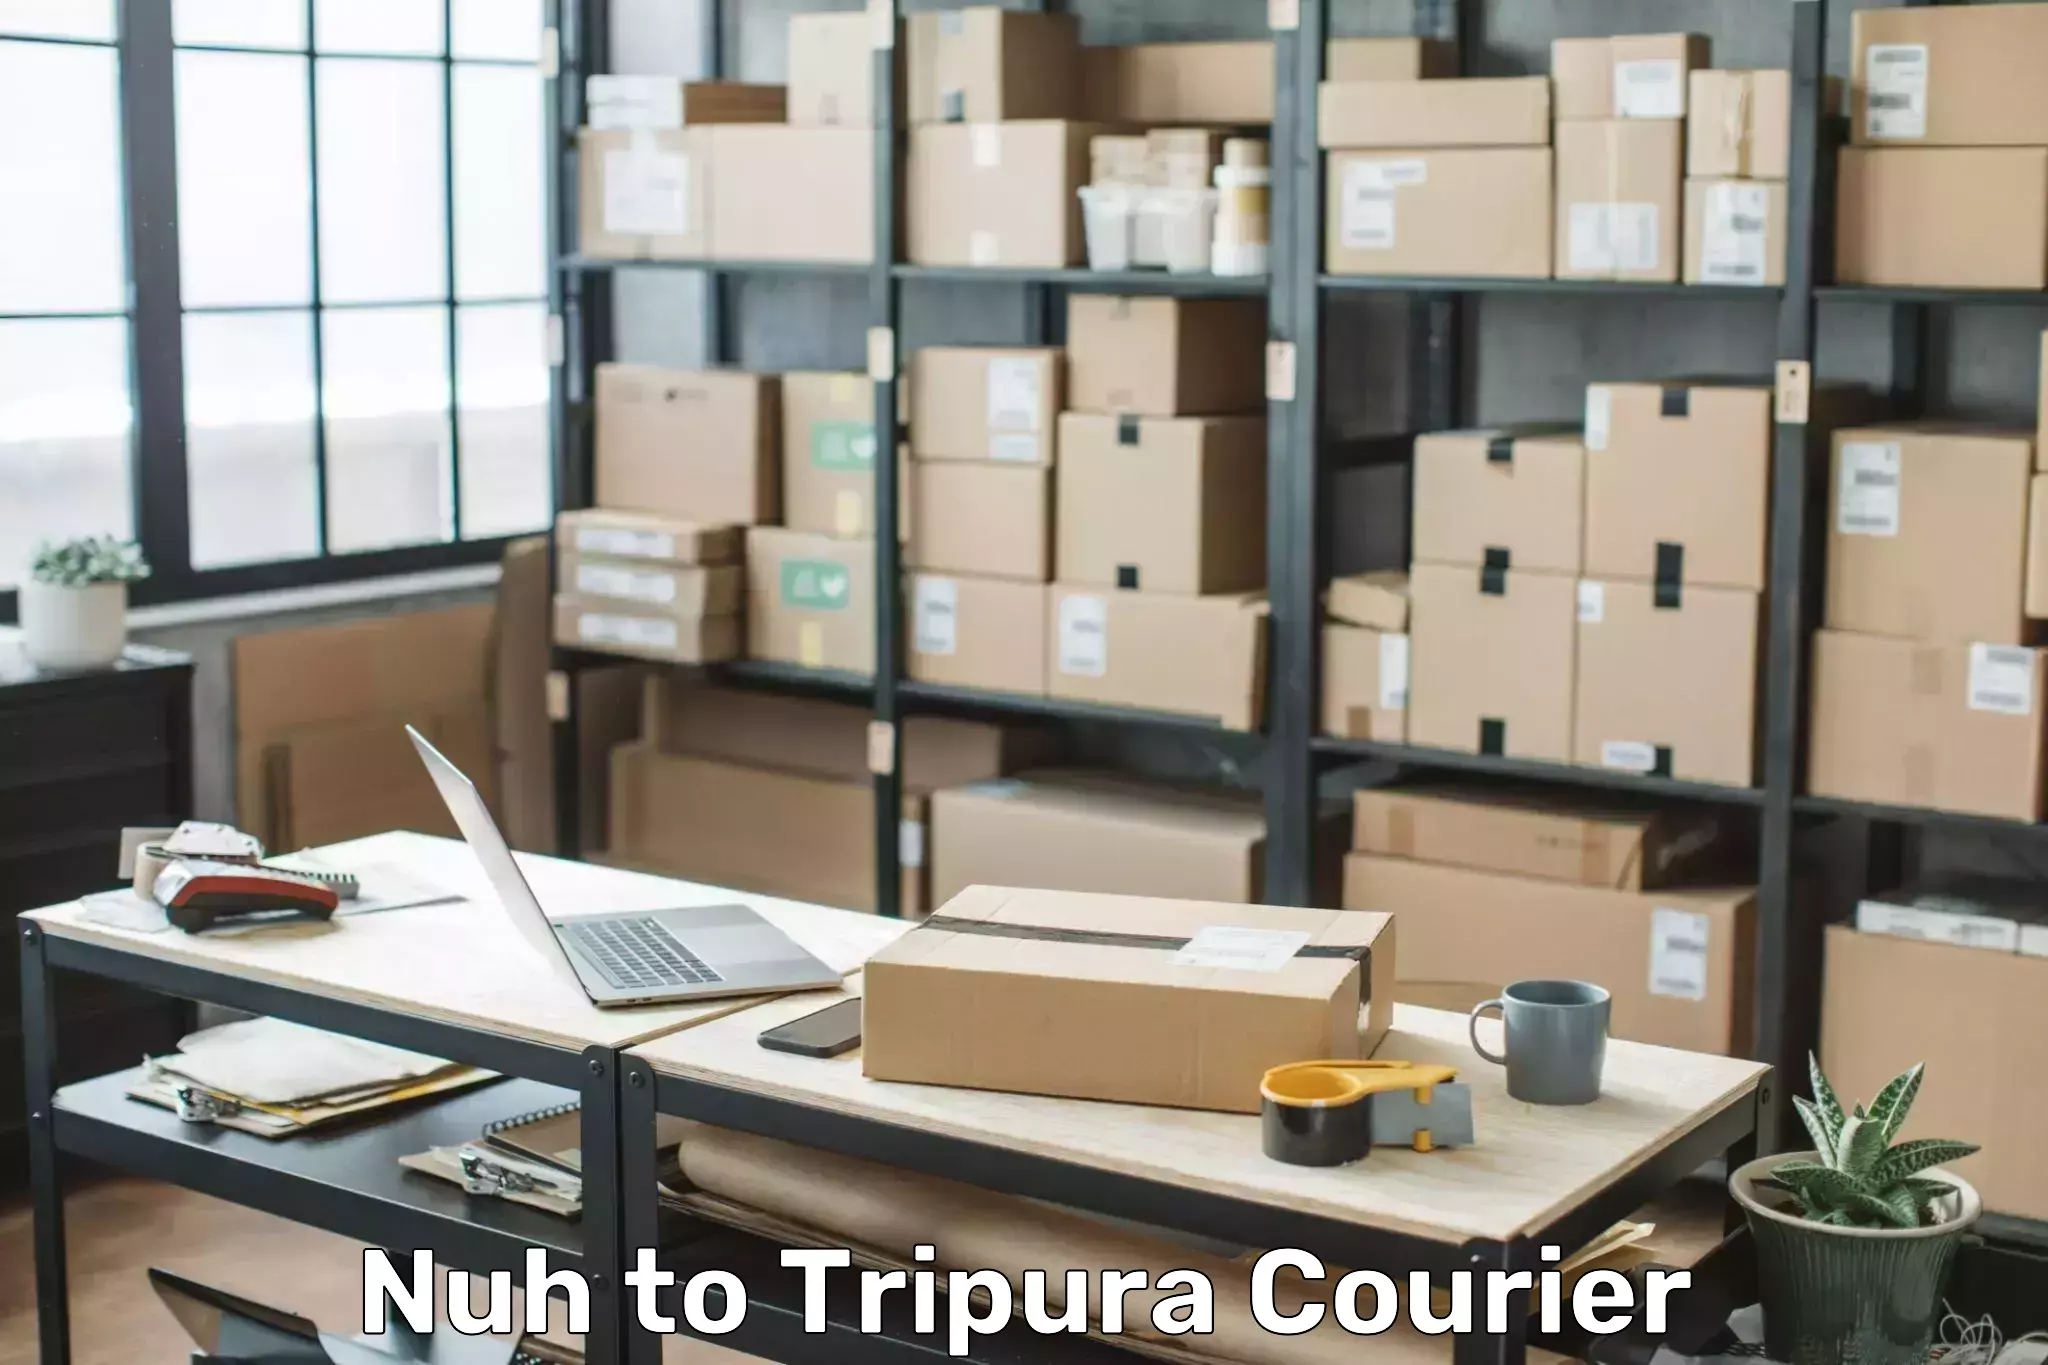 Door-to-door baggage service Nuh to Udaipur Tripura